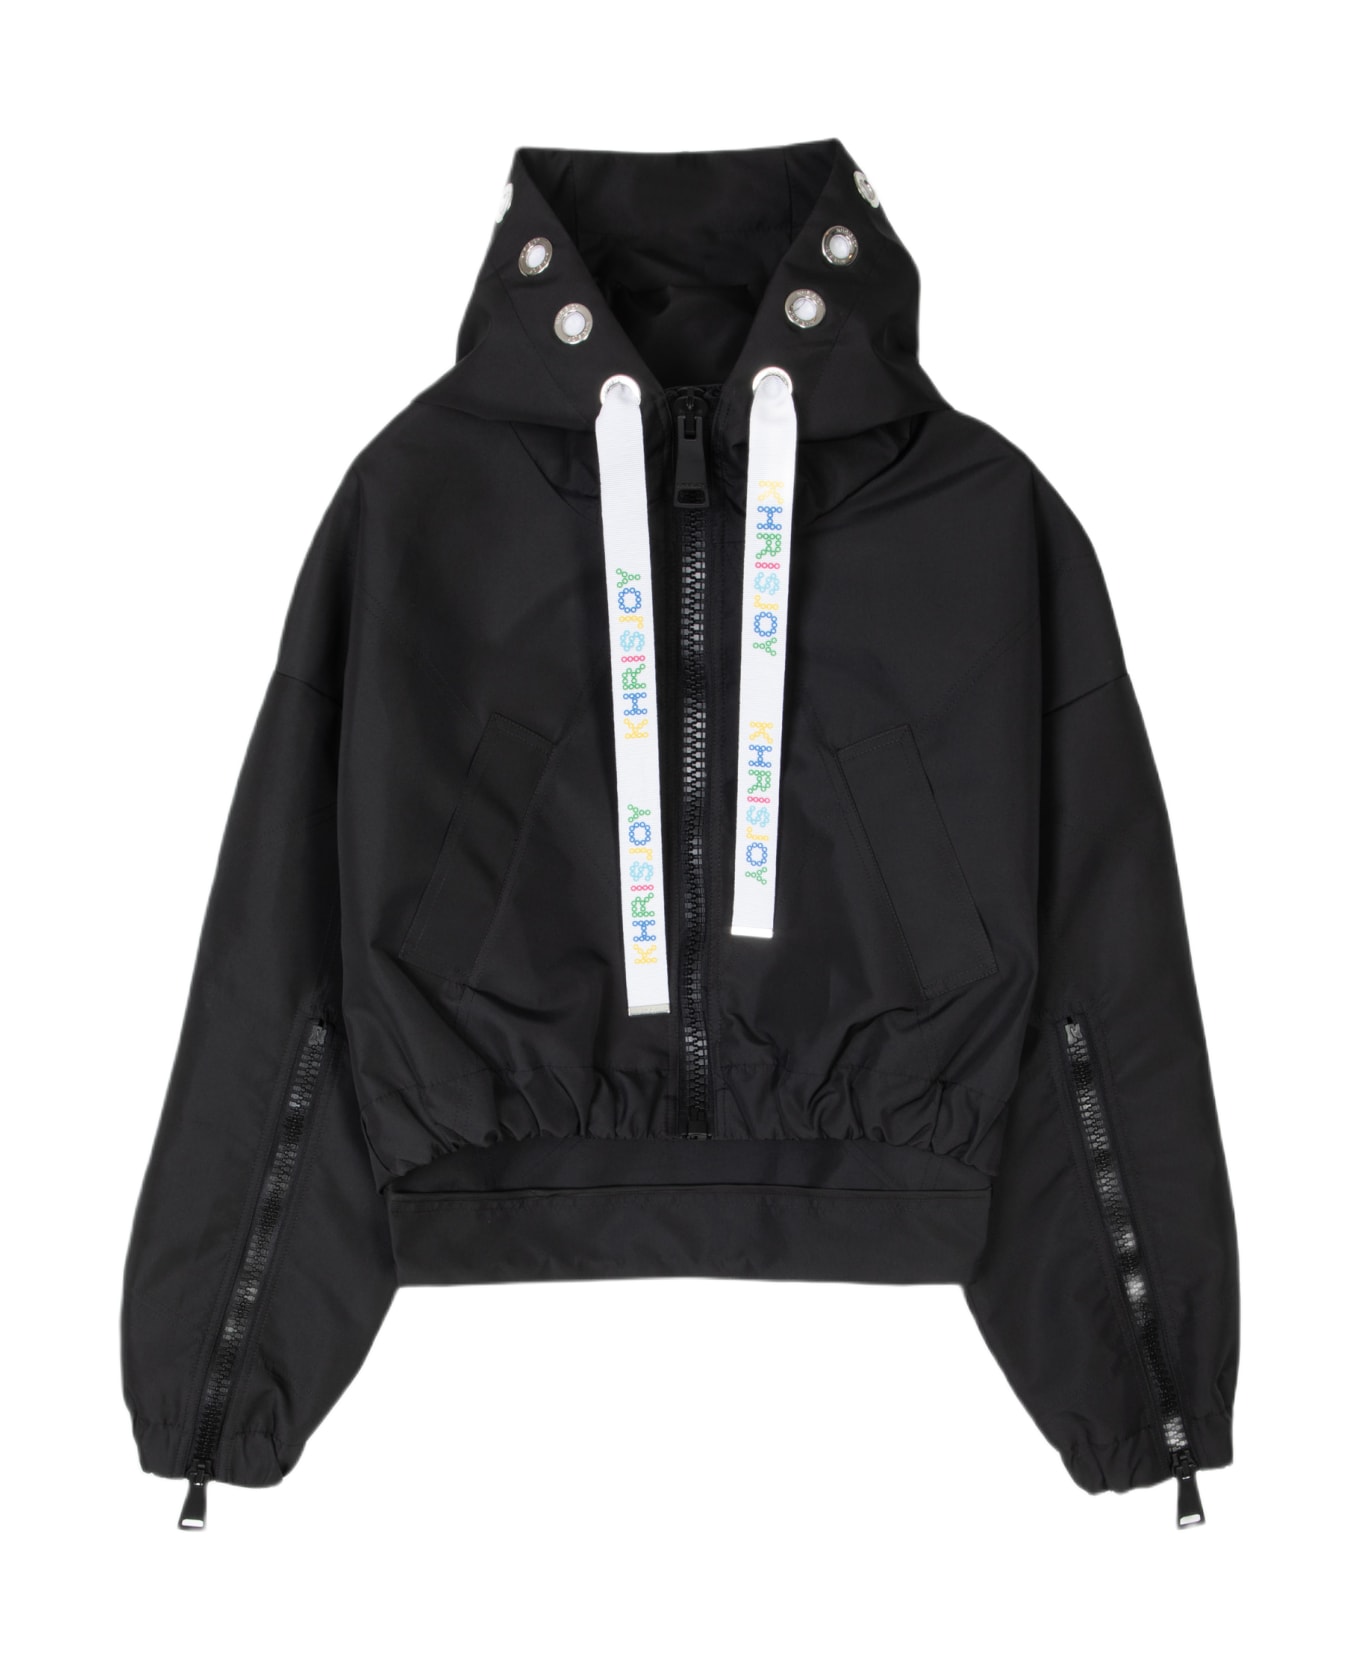 Khrisjoy New Khris Crop Windbreaker Black nylon hooded windproof jacket - New Khris Crop Windbreaker - Nero フリース